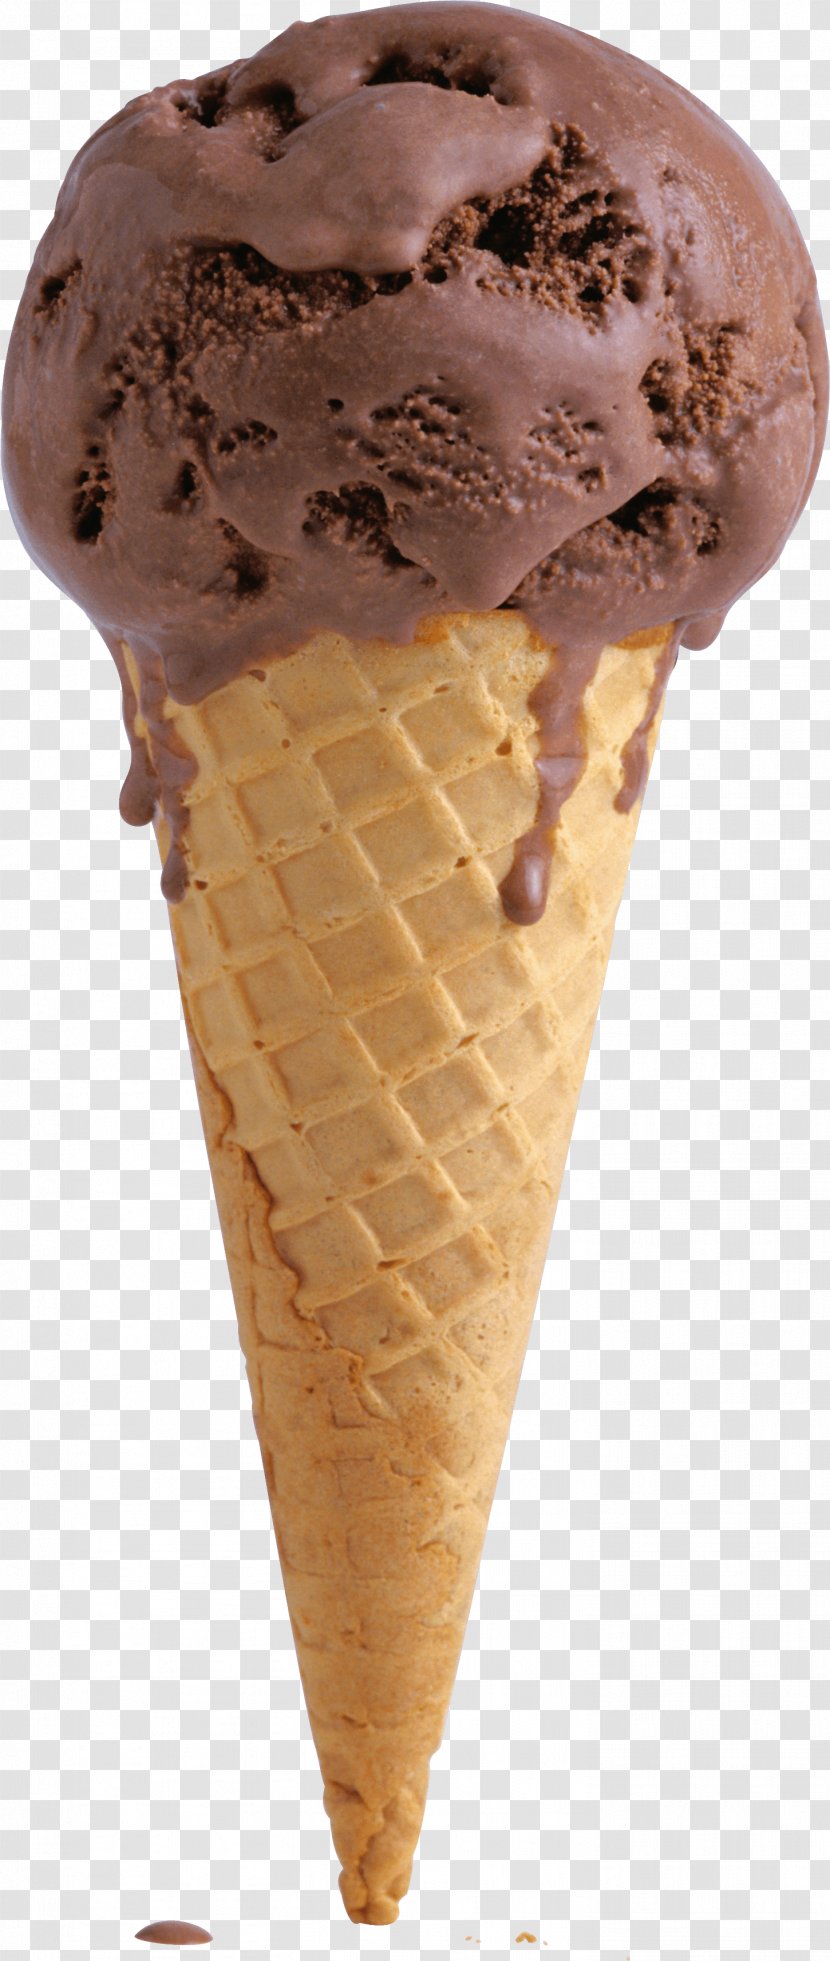 Ice Cream Cones Neapolitan Chocolate - Cone Transparent PNG